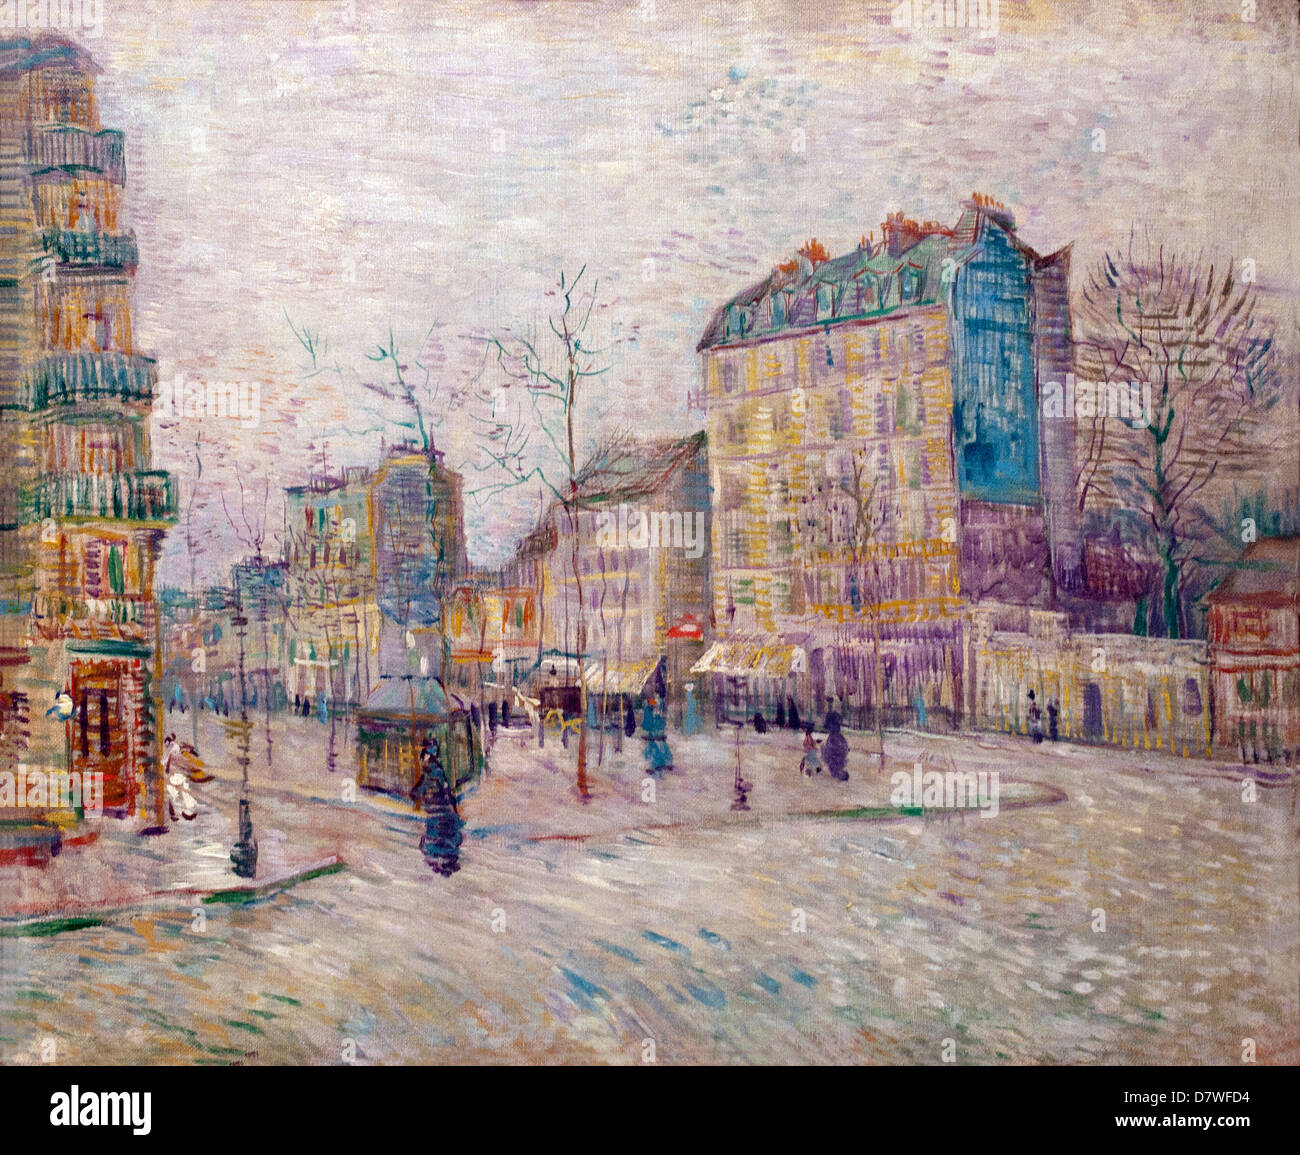 Boulevard de Clichy ( Paris ) 1887 Vincent van Gogh 1853 - 1890  Dutch Netherlands Post Impressionism Stock Photo